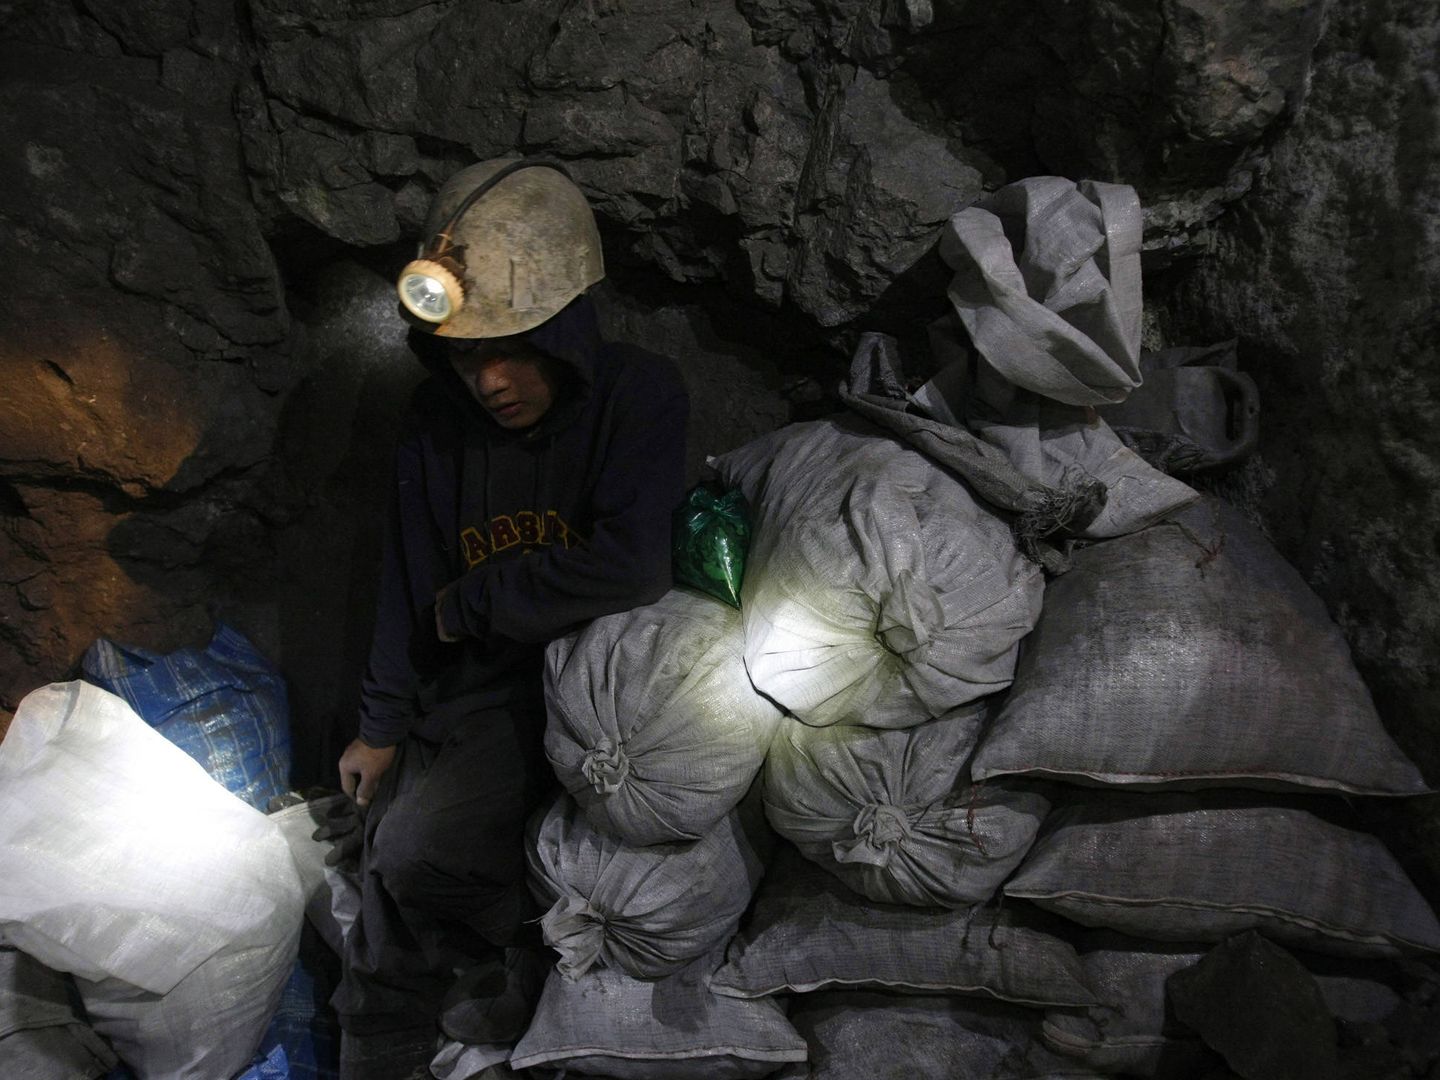 Moisés, un joven minero de 17 años, guarda sacas de mineral en la mina de El Rosario en Cerro Rico, en enero de 2010. (Reuters)